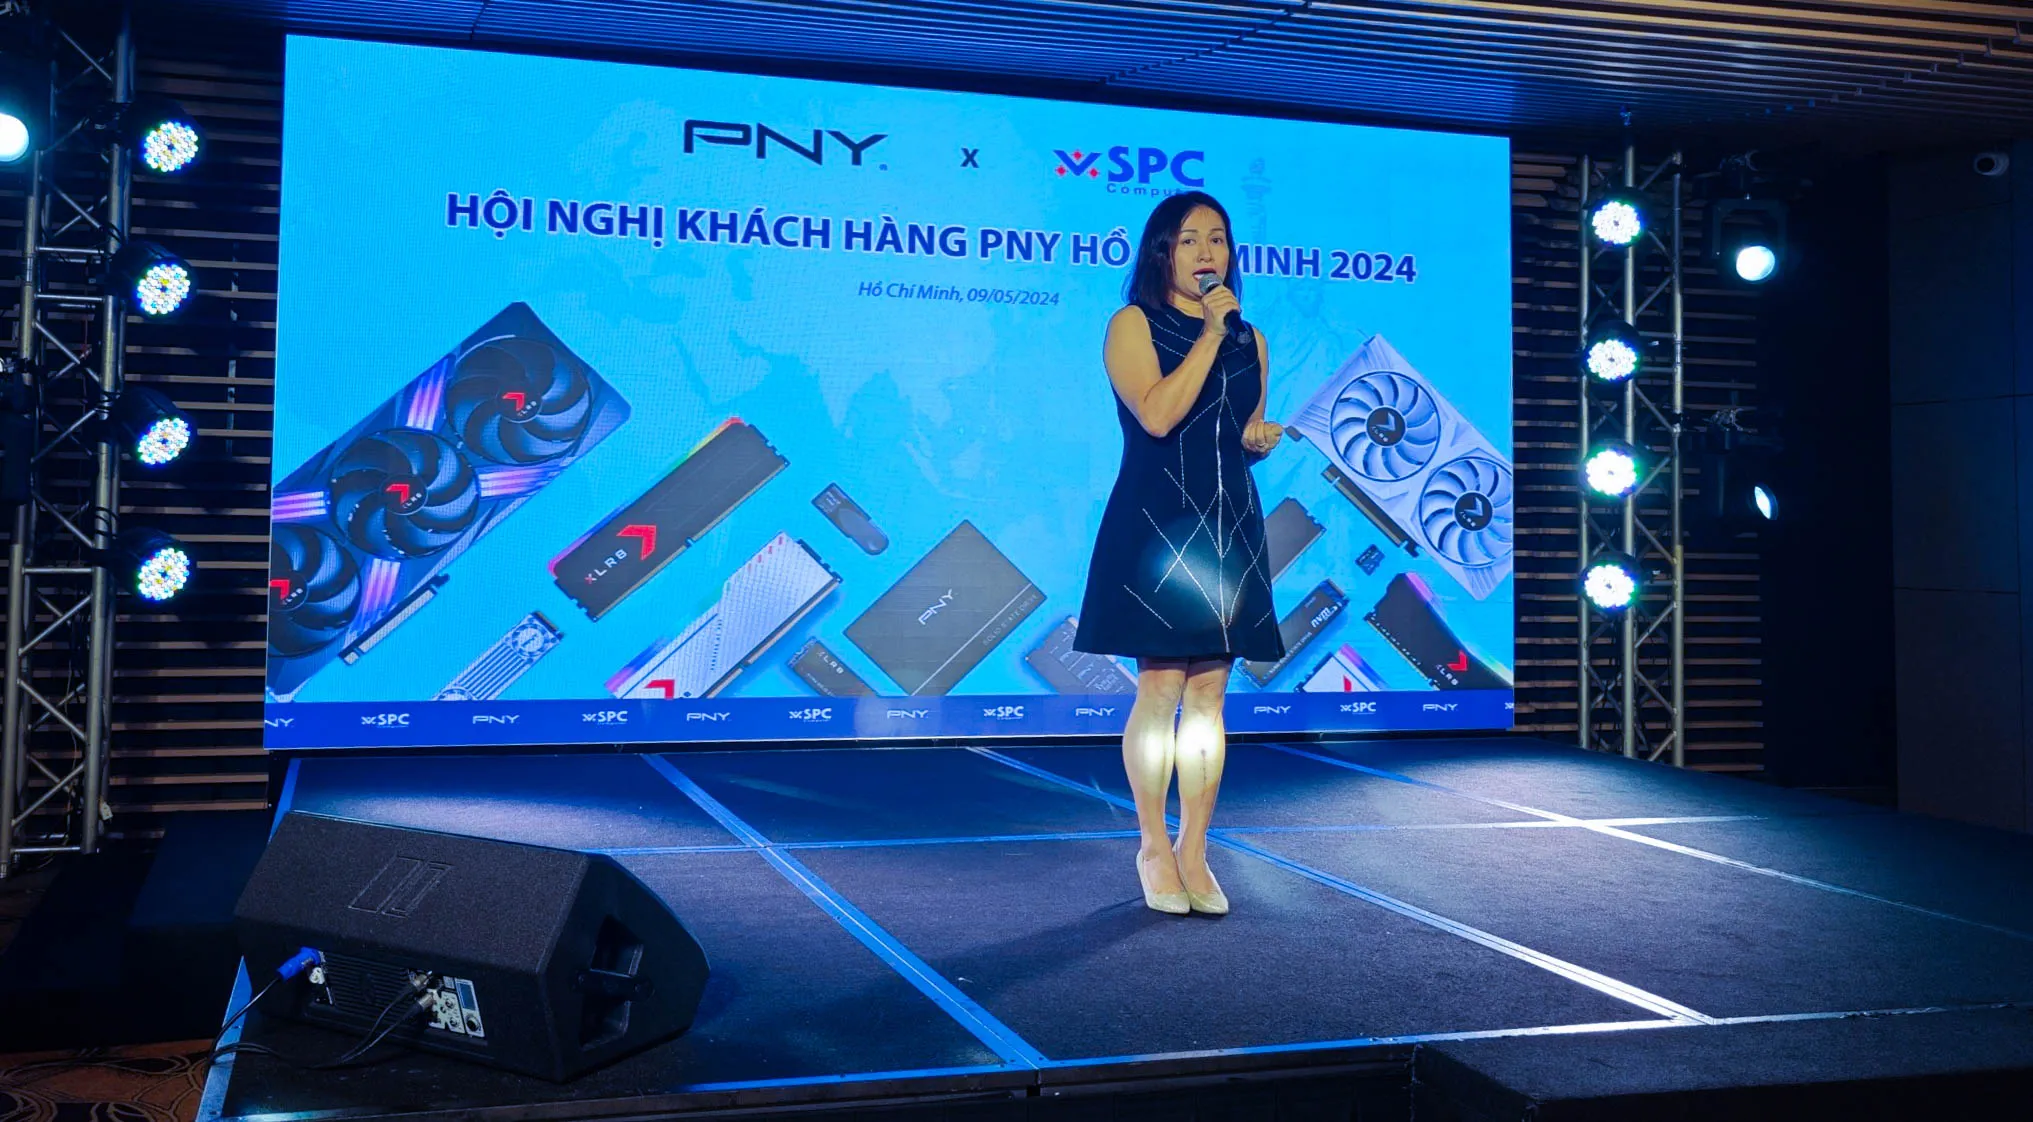 Sự kiện "Hội nghị khách hàng PNY Hồ Chí Minh 2024", Máy Tính Vĩnh Xuân chính thức trở thành đối tác độc quyền